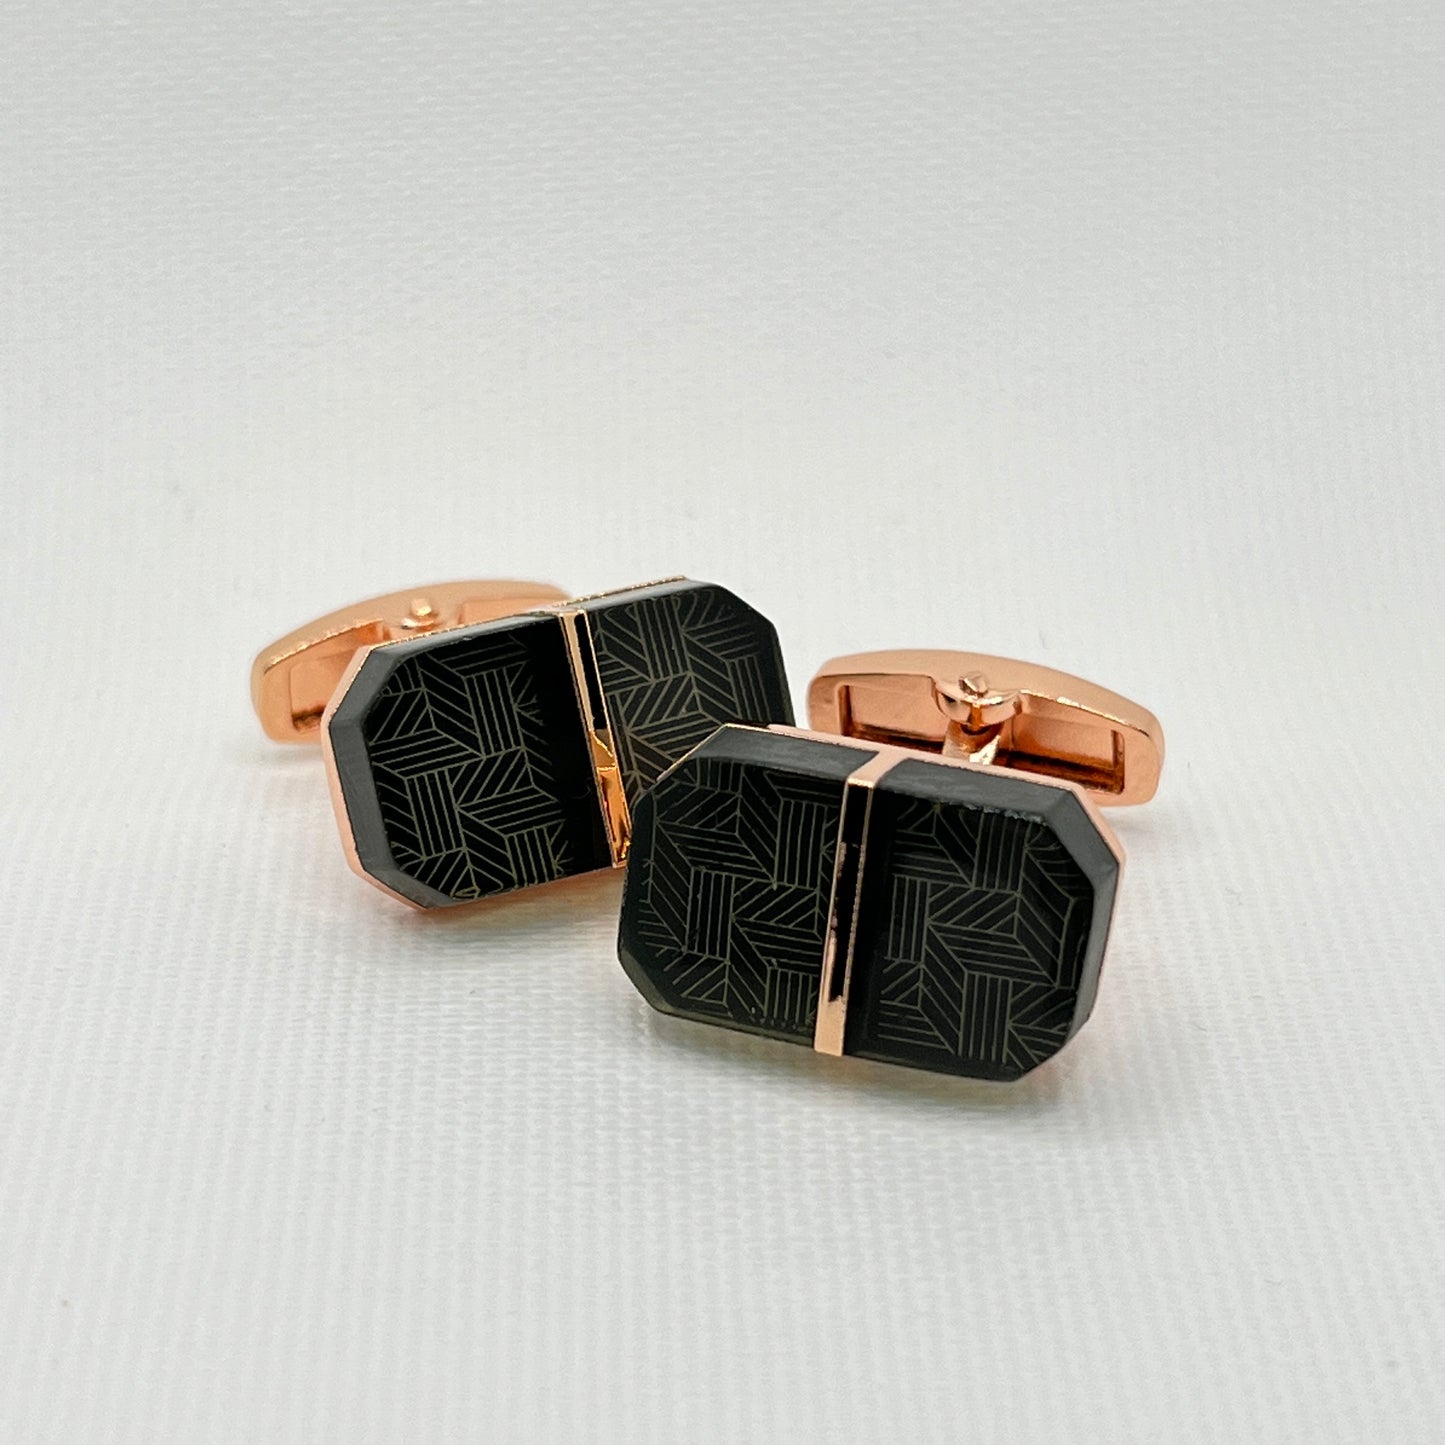 Tasker & Shaw | Luxury Menswear | Rose gold with black geometric pattern cufflinks